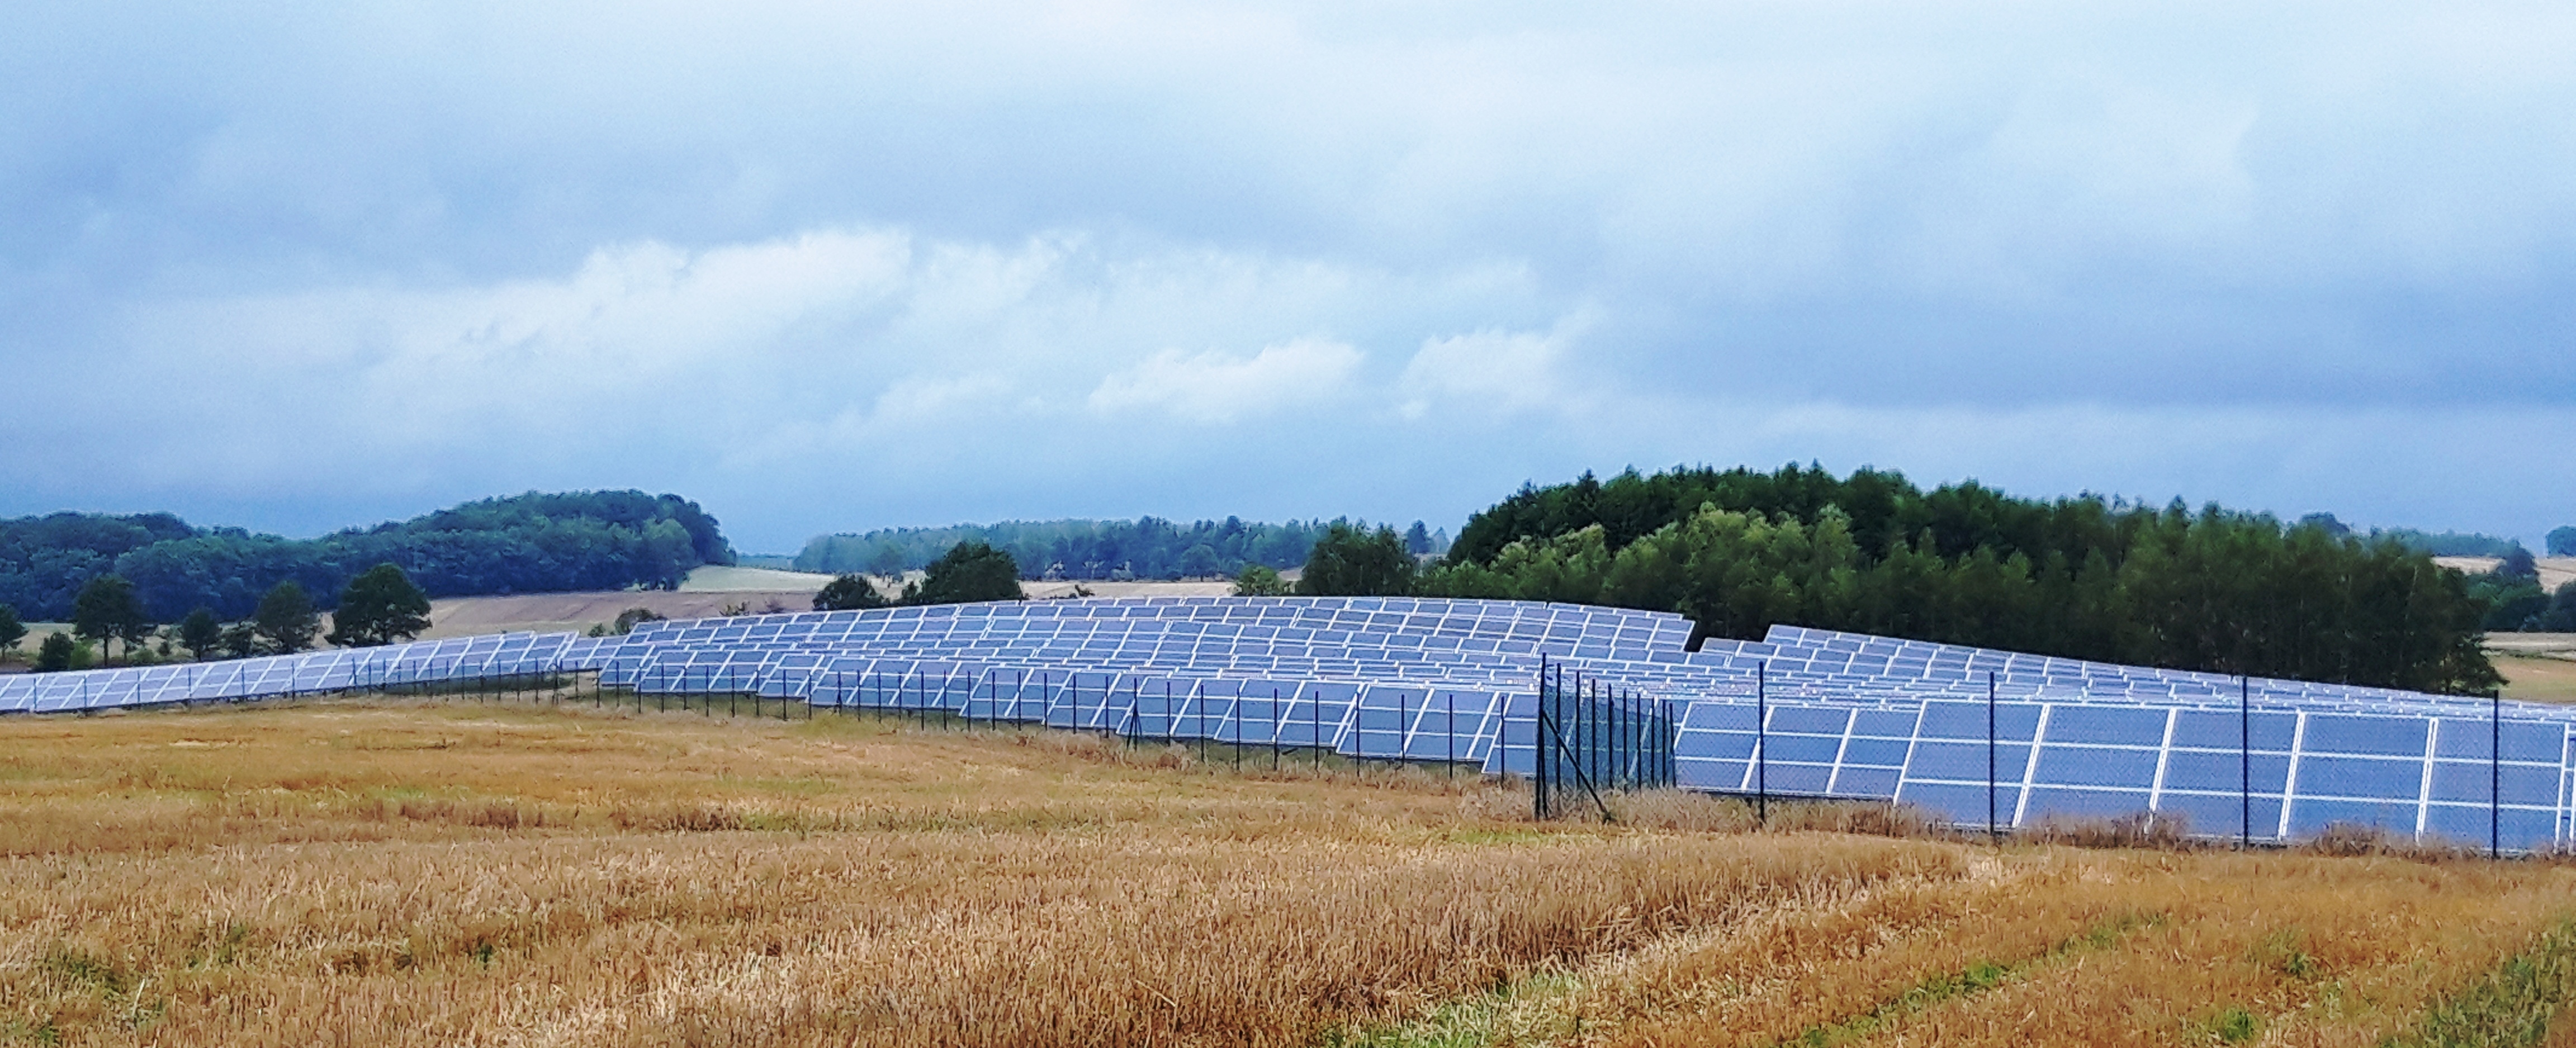 W gminie Zgorzelec powstała wielka farma słoneczna